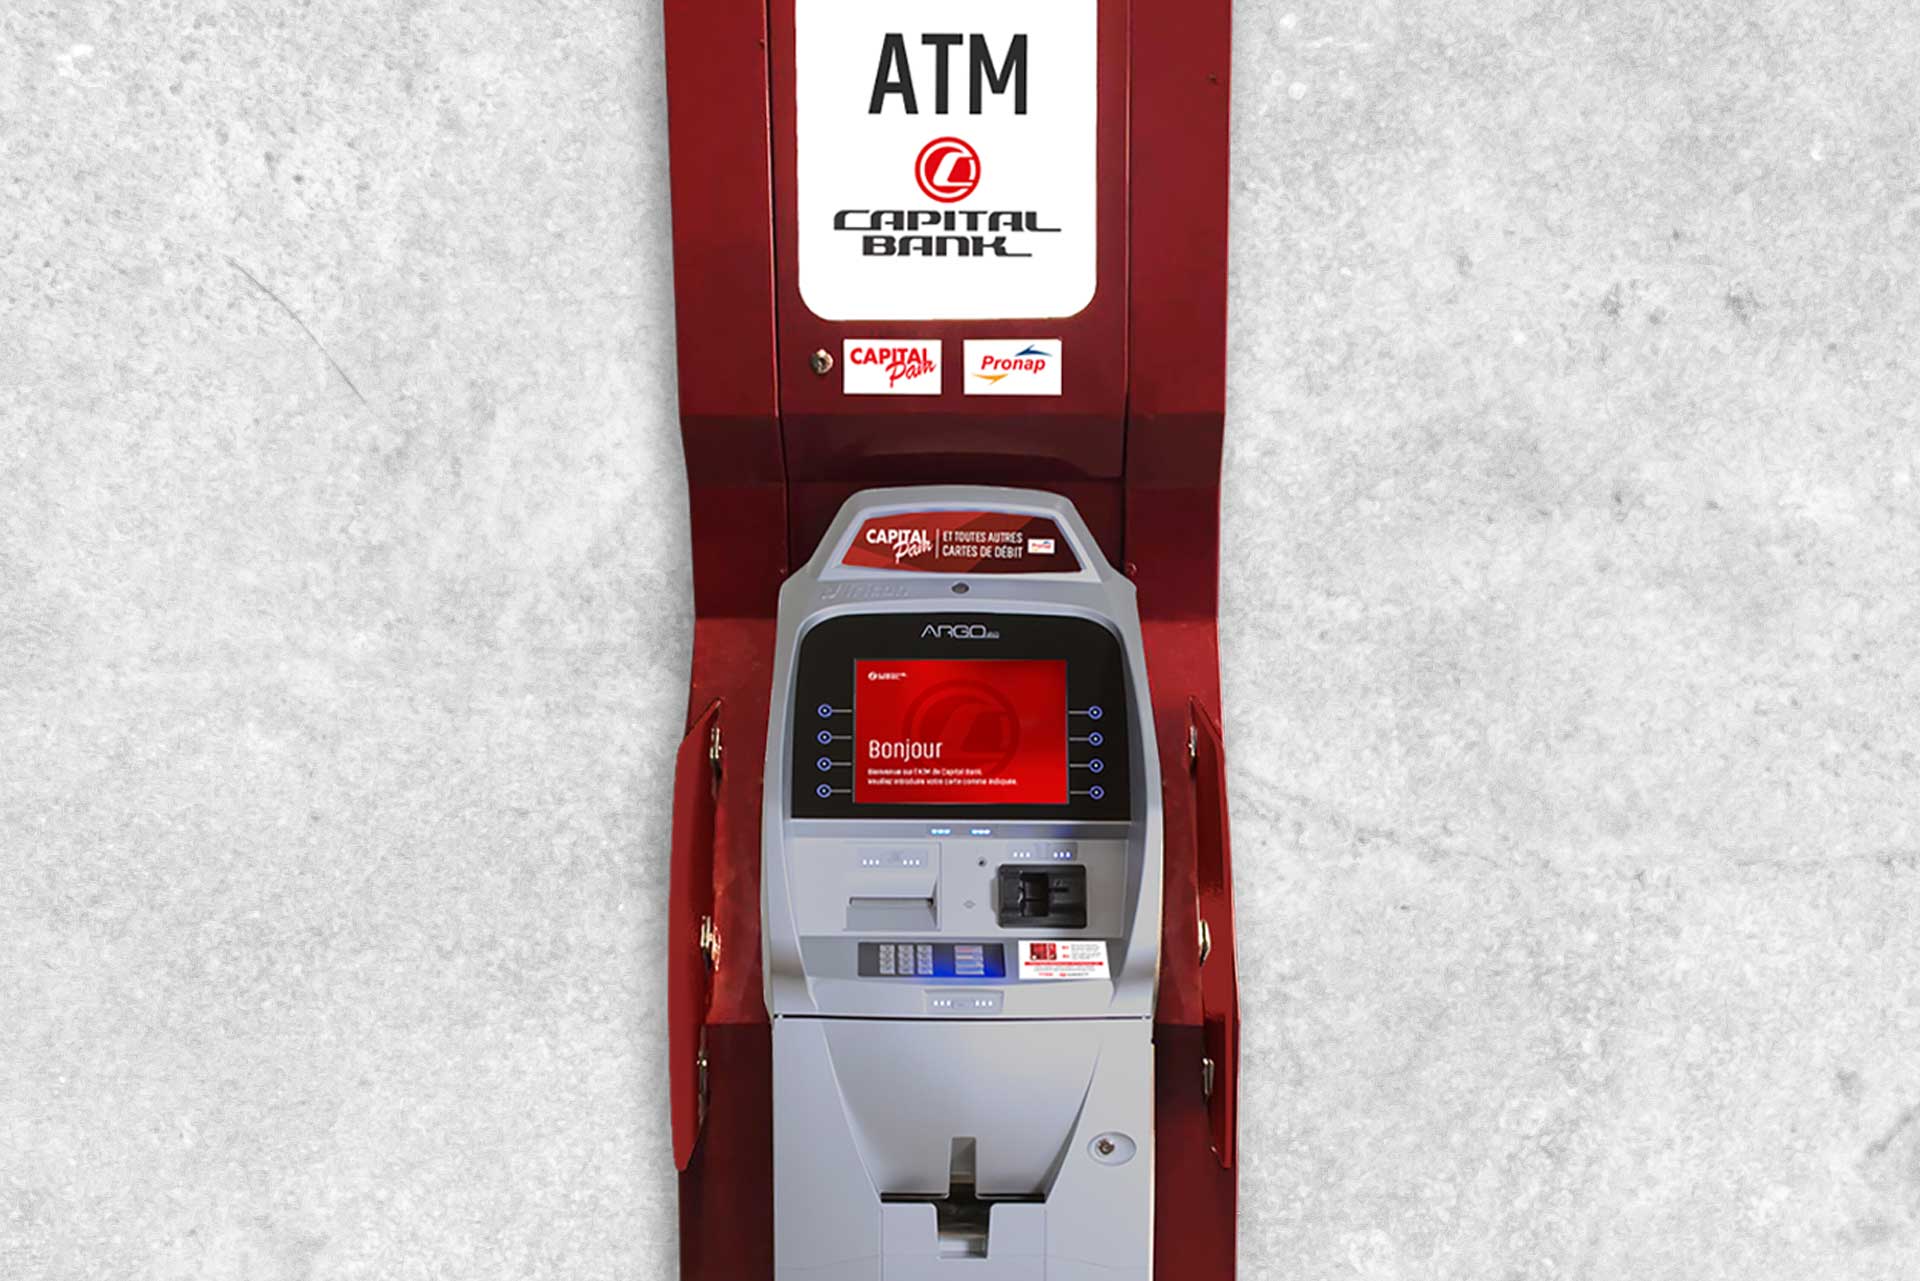 ATM de Capital Bank en Haïti, offrant des services bancaires pratiques et accessibles